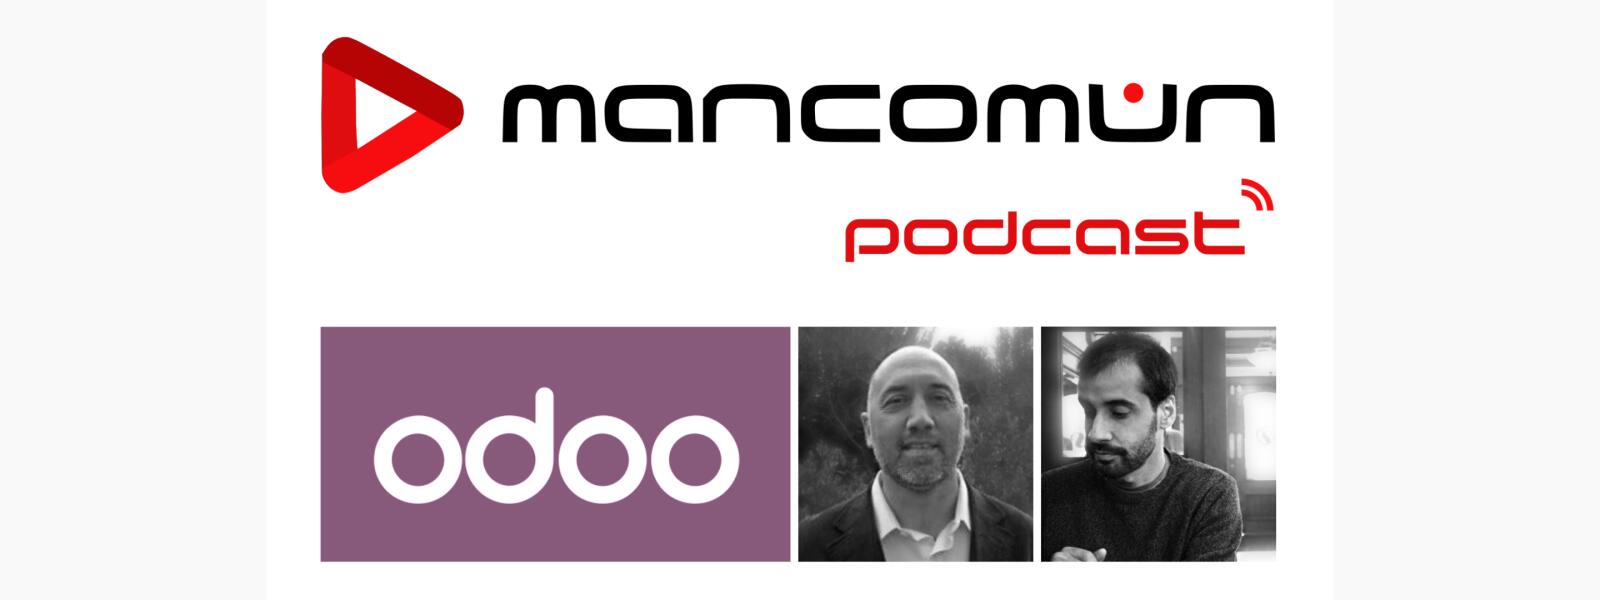 Mancomún Podcast: 74 – Que supuso para la empresa el software libre, con Wilfredo Santana y Javier Giráldez